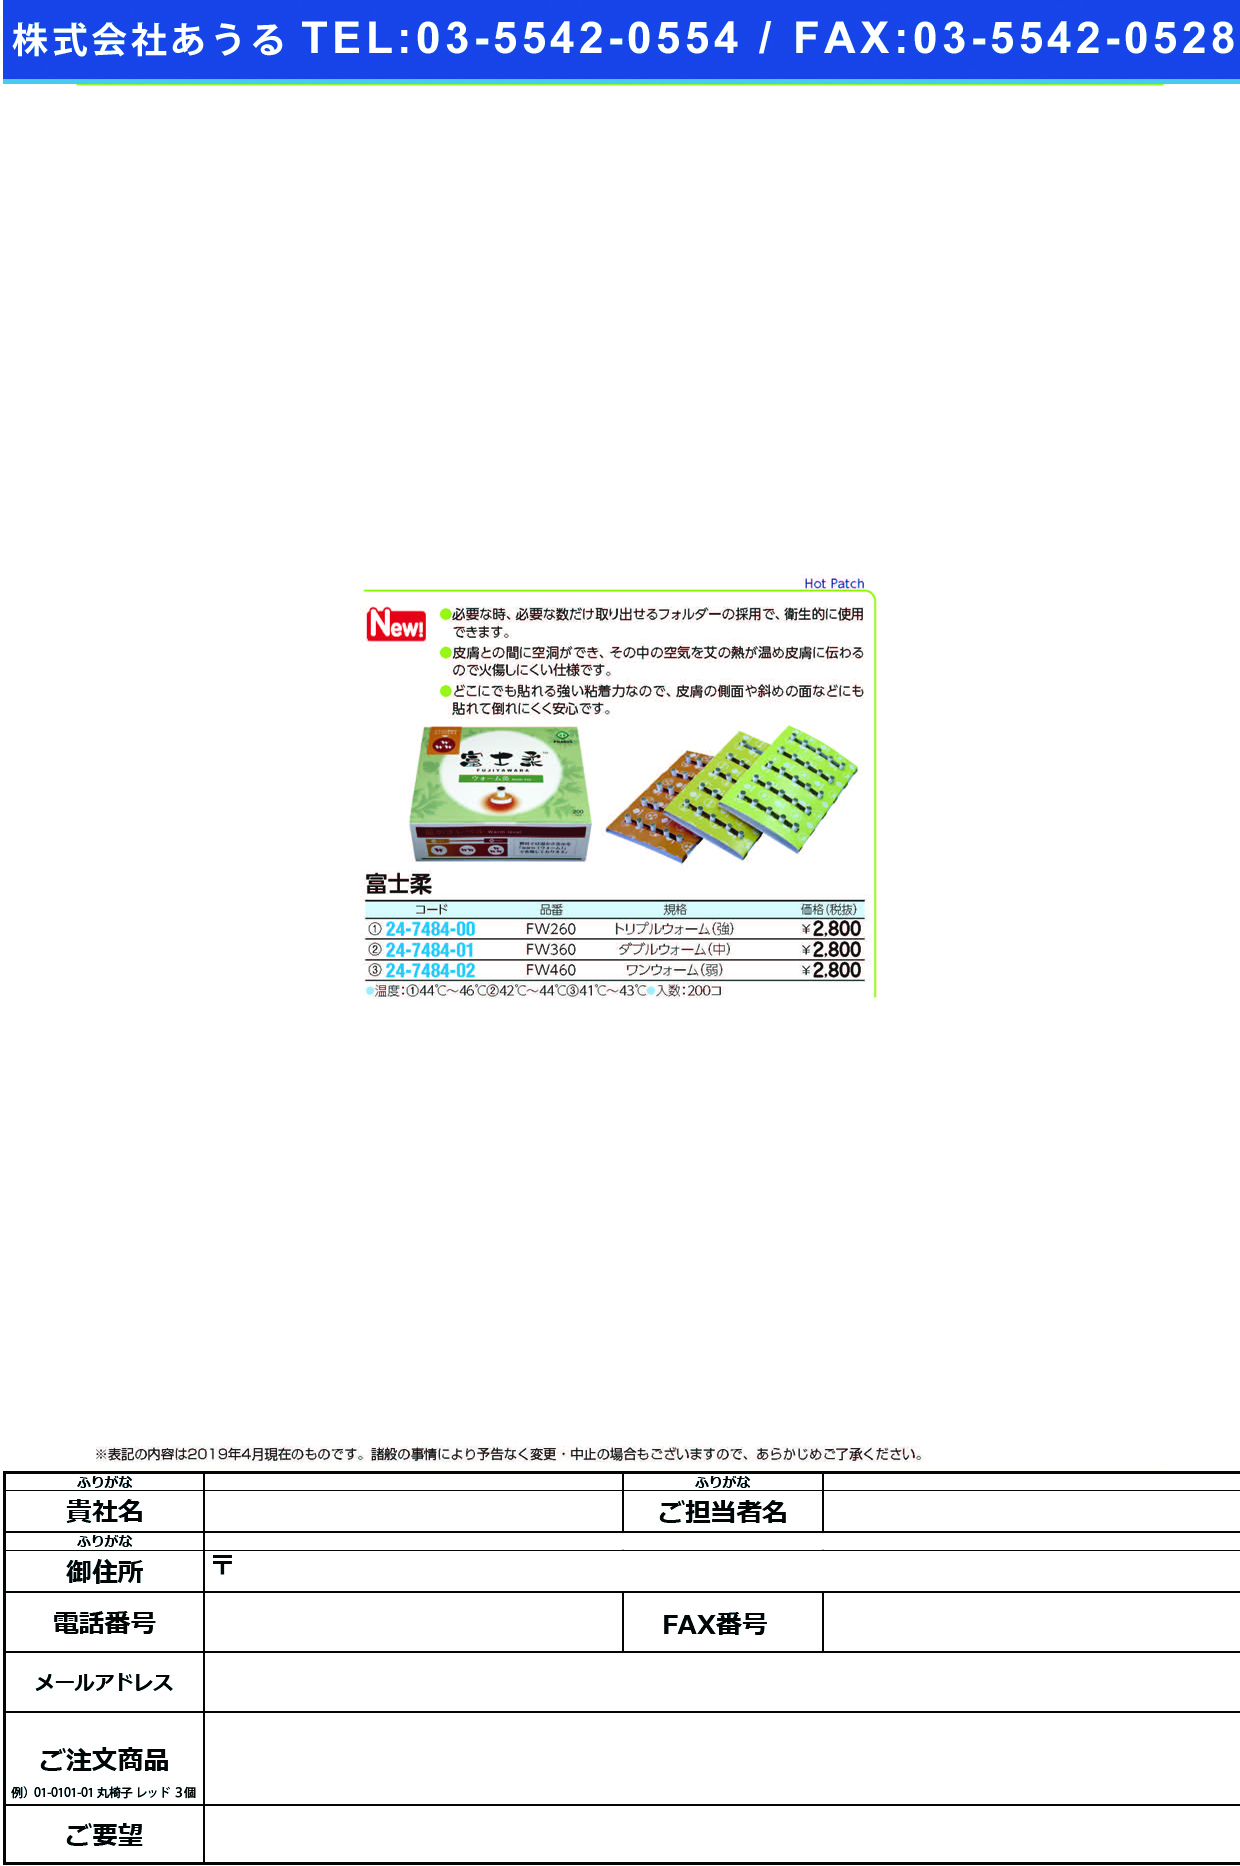 (24-7484-01)富士柔FW360(ﾀﾞﾌﾞﾙｳｫｰﾑ)ﾁｭｳ ﾌｼﾞﾔﾜﾗ(ファロス)【1箱単位】【2019年カタログ商品】